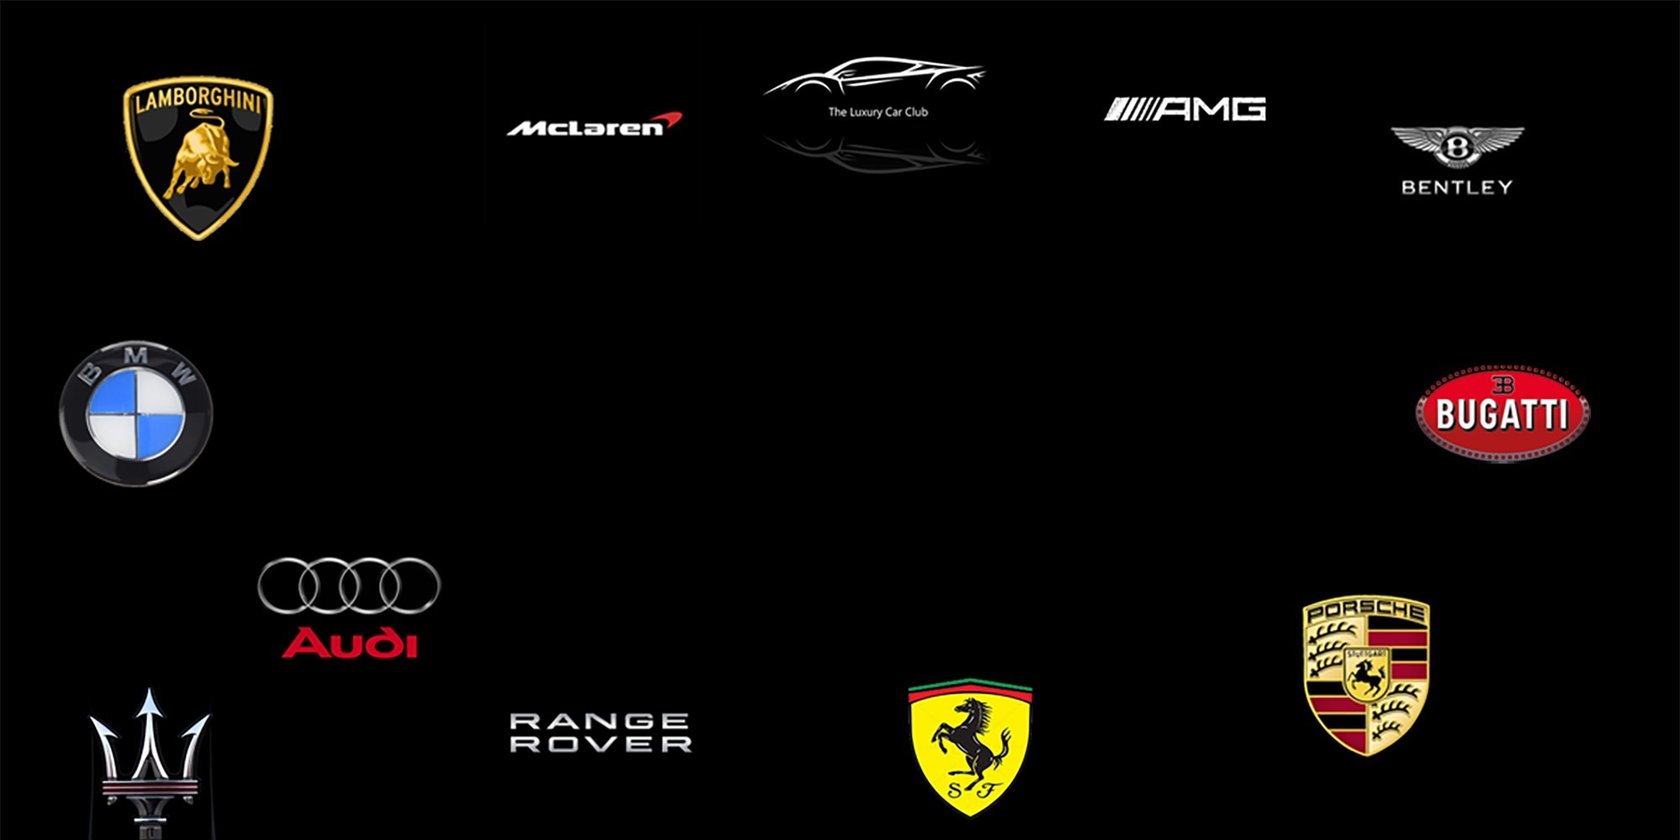 Logo-Teppich mit Luxus-Car Marken